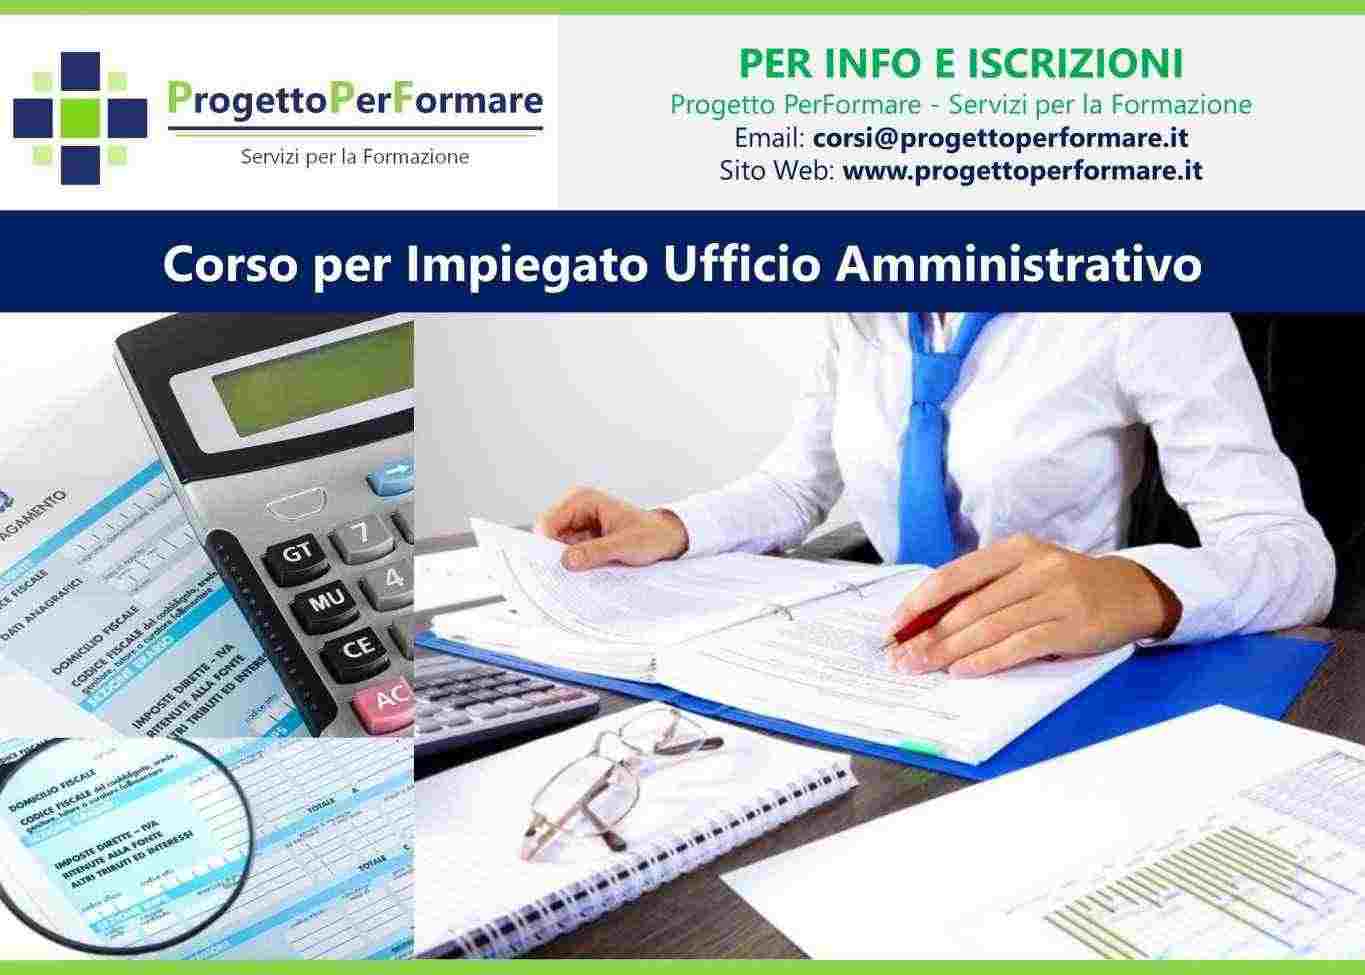 Corso per impiegato ufficio amministrativo a Bologna